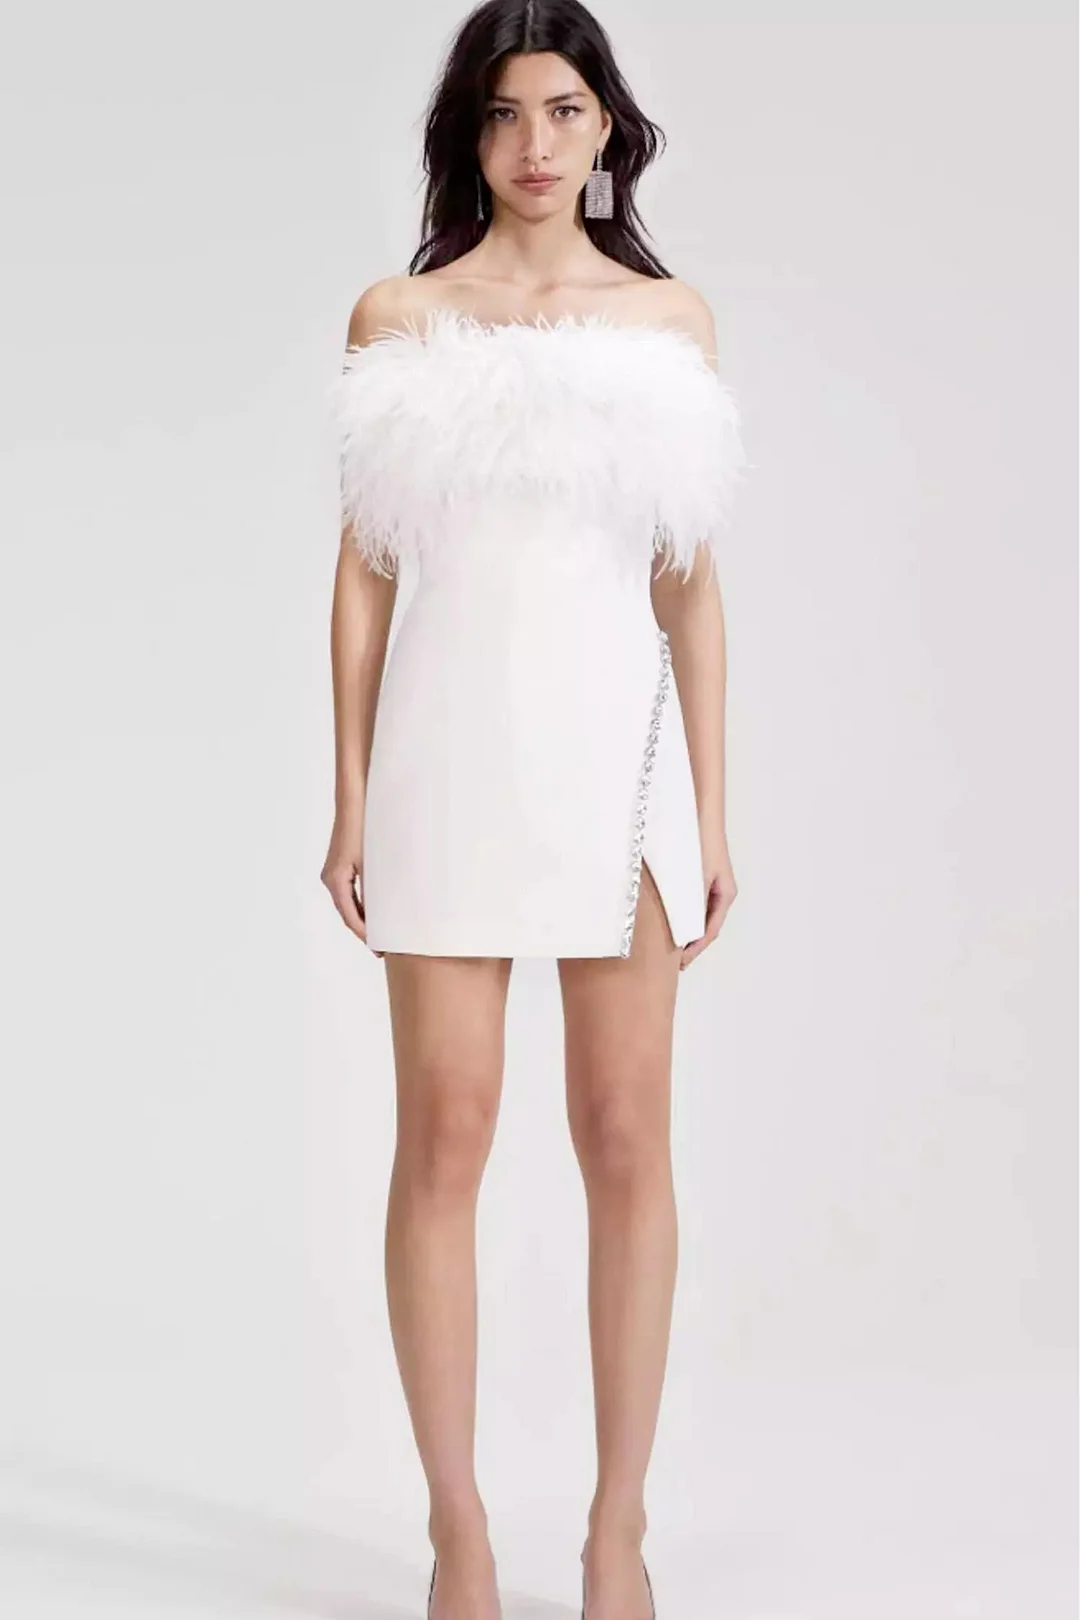 Adelaide White Feather Mini Dress